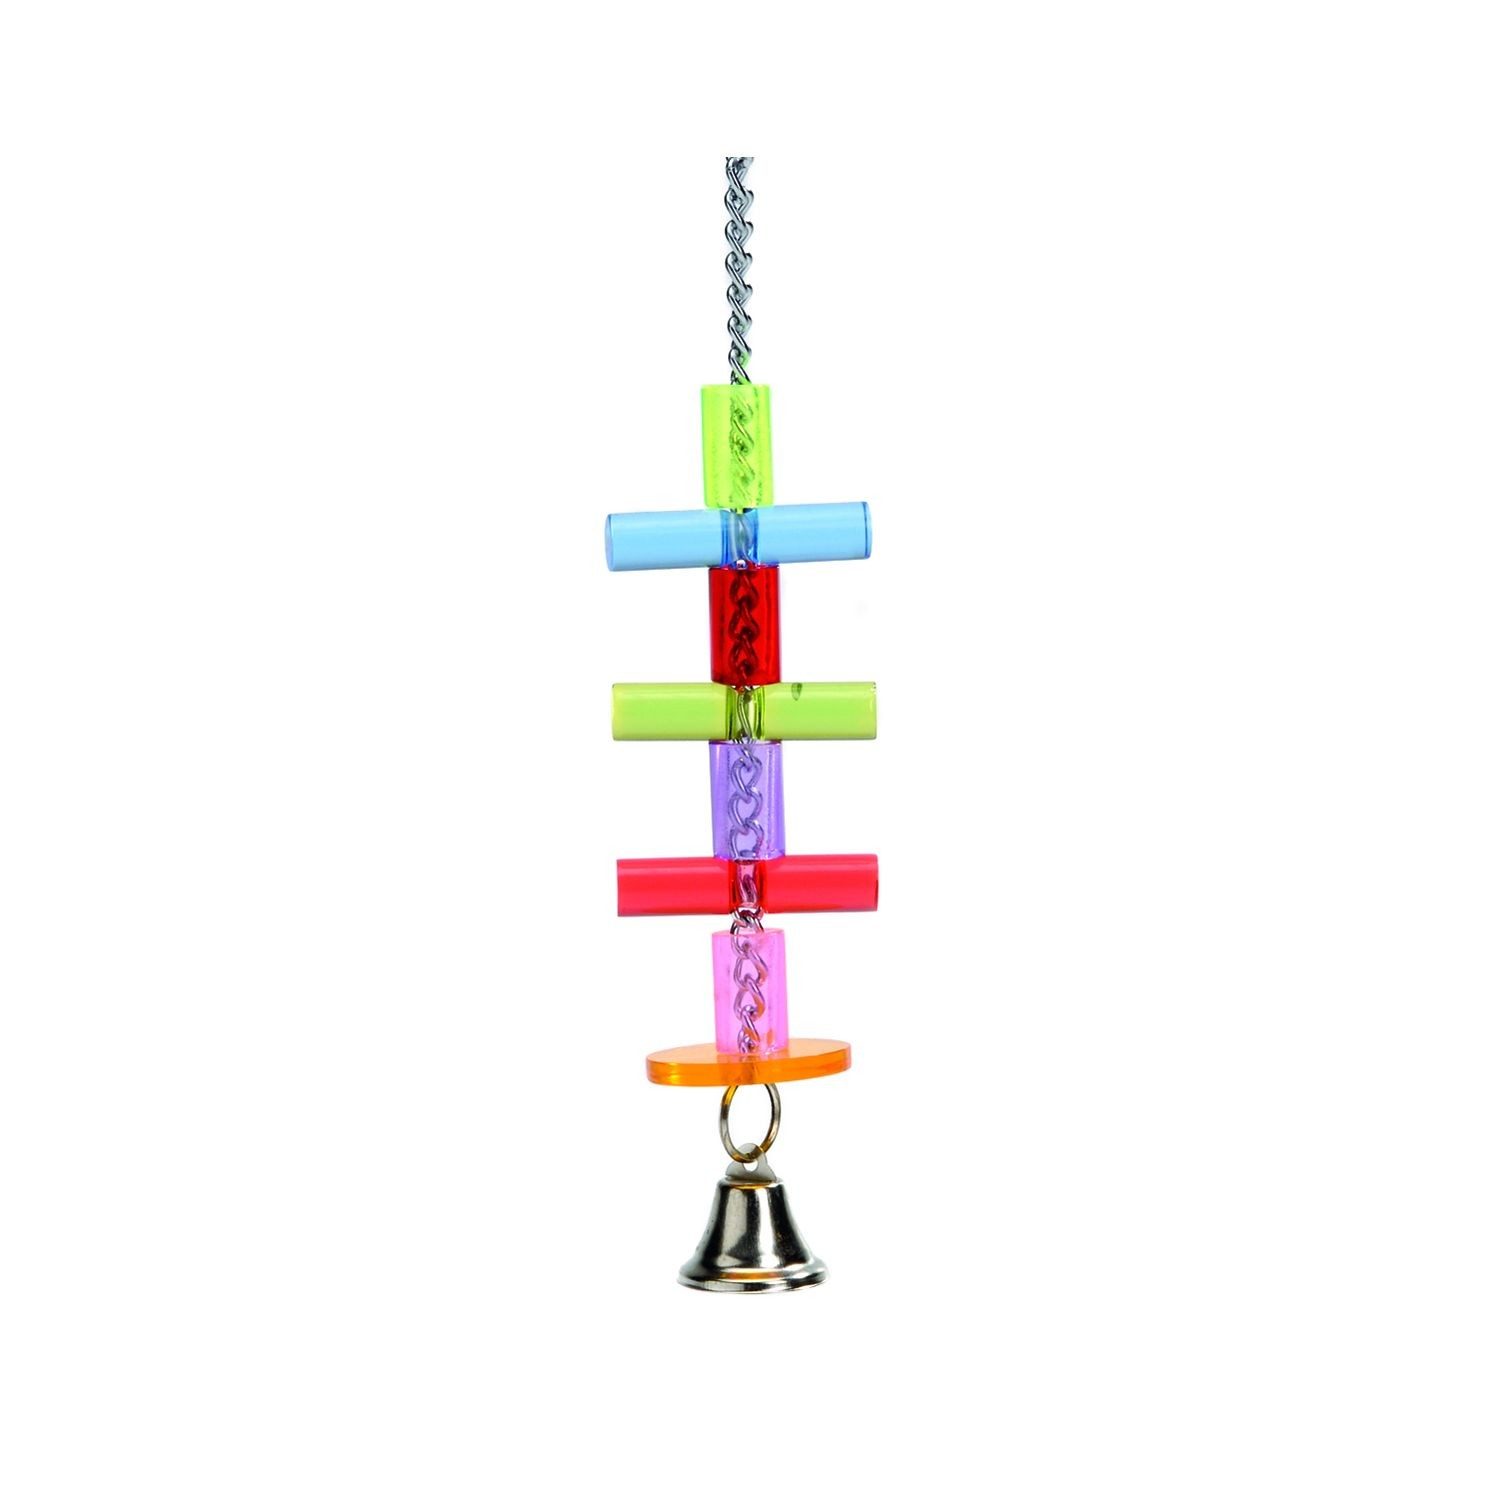 Tyrol Brinquedo Escada de plástico para pássaros